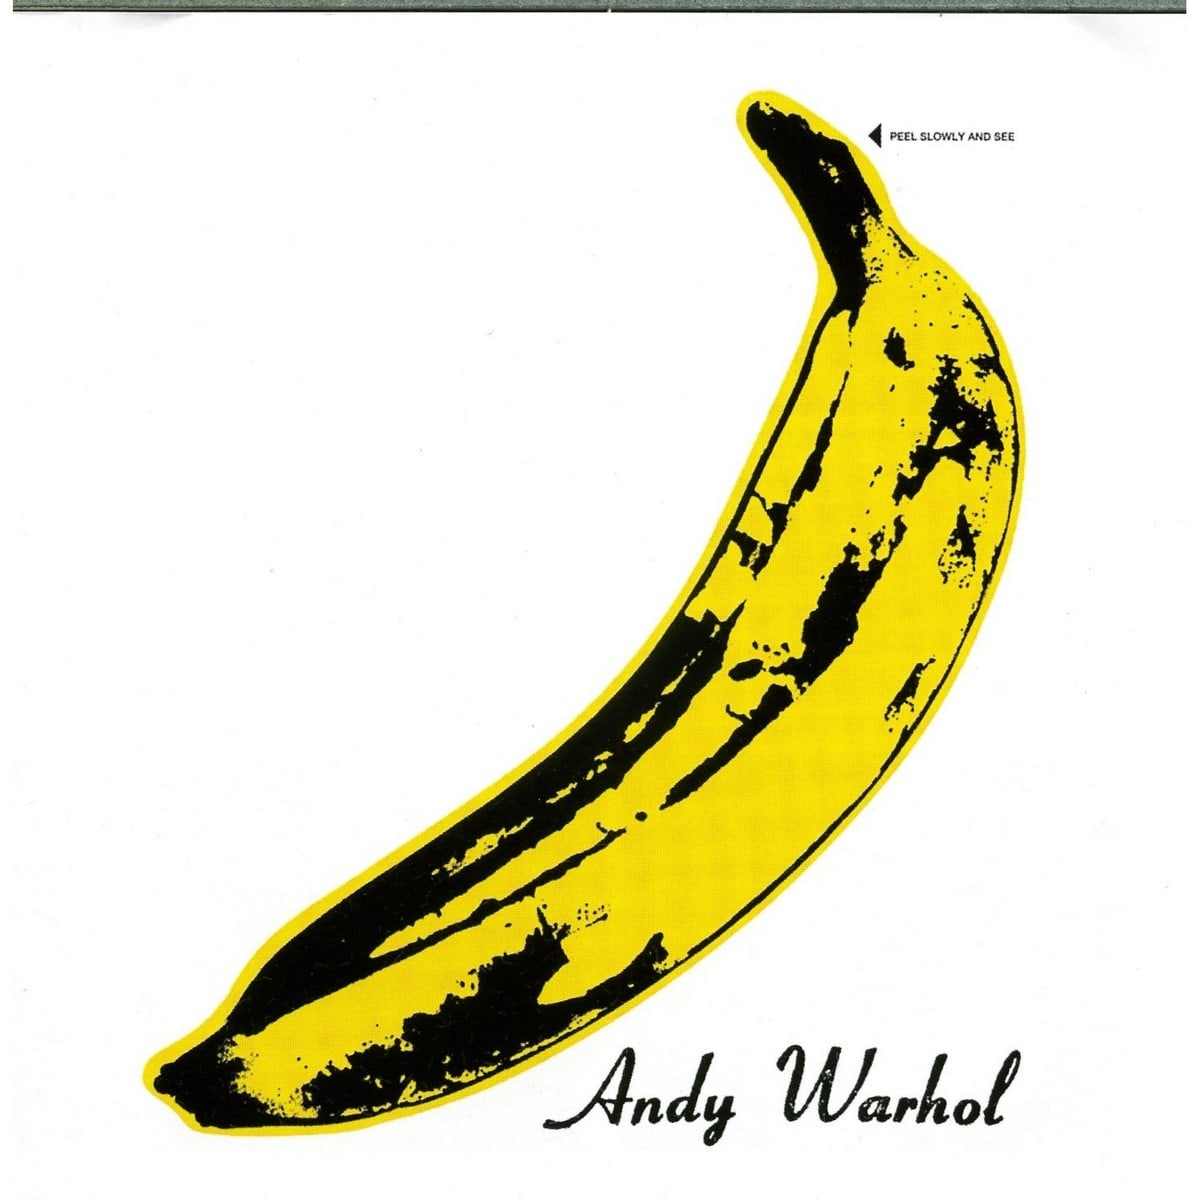 Картина «Банан», Энди Уорхол — описание